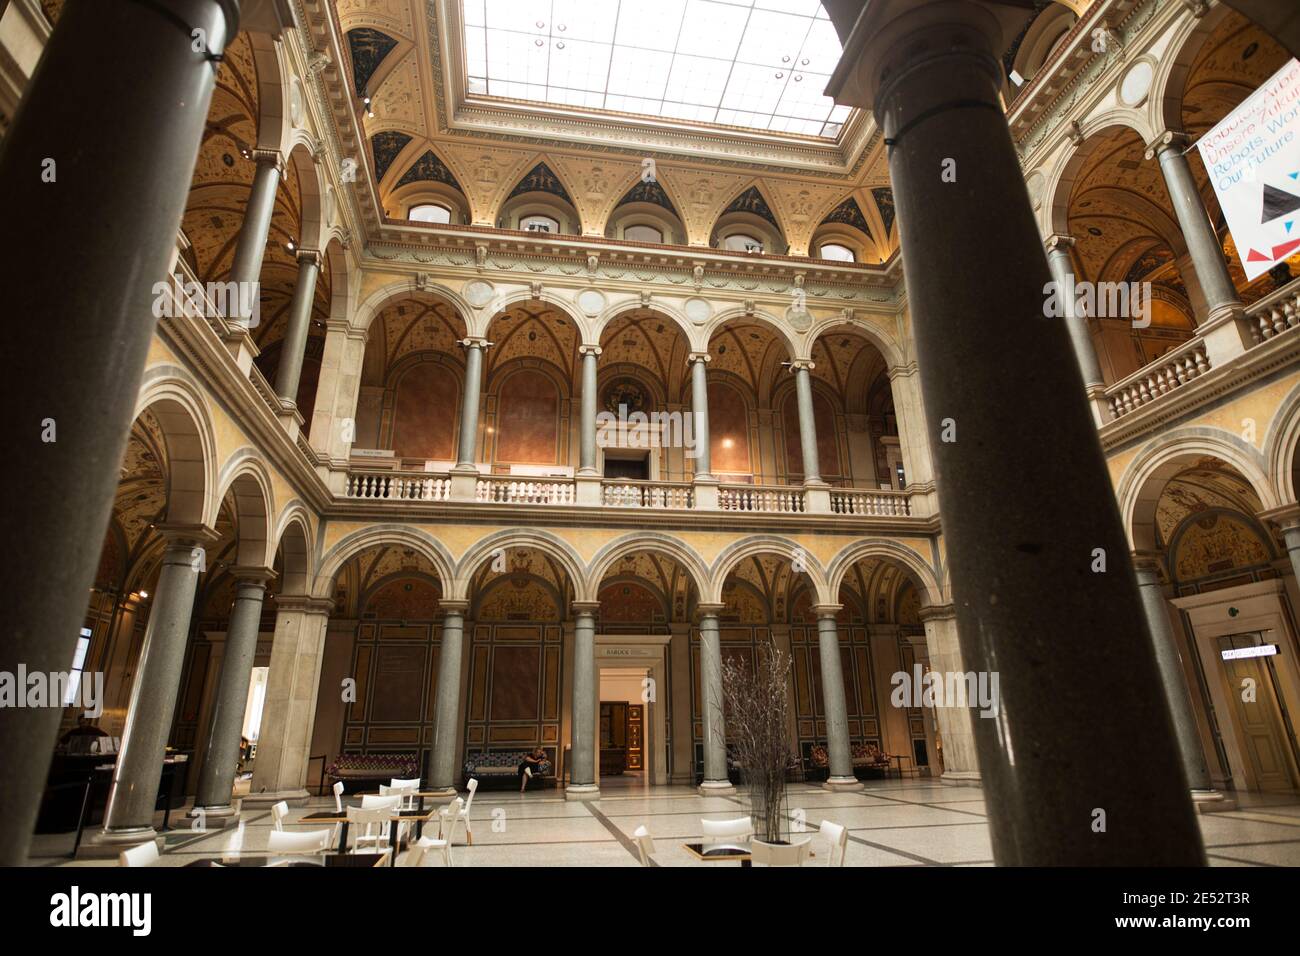 La cour intérieure du Musée des Arts appliqués (MAK) à Vienne, Autriche. Banque D'Images